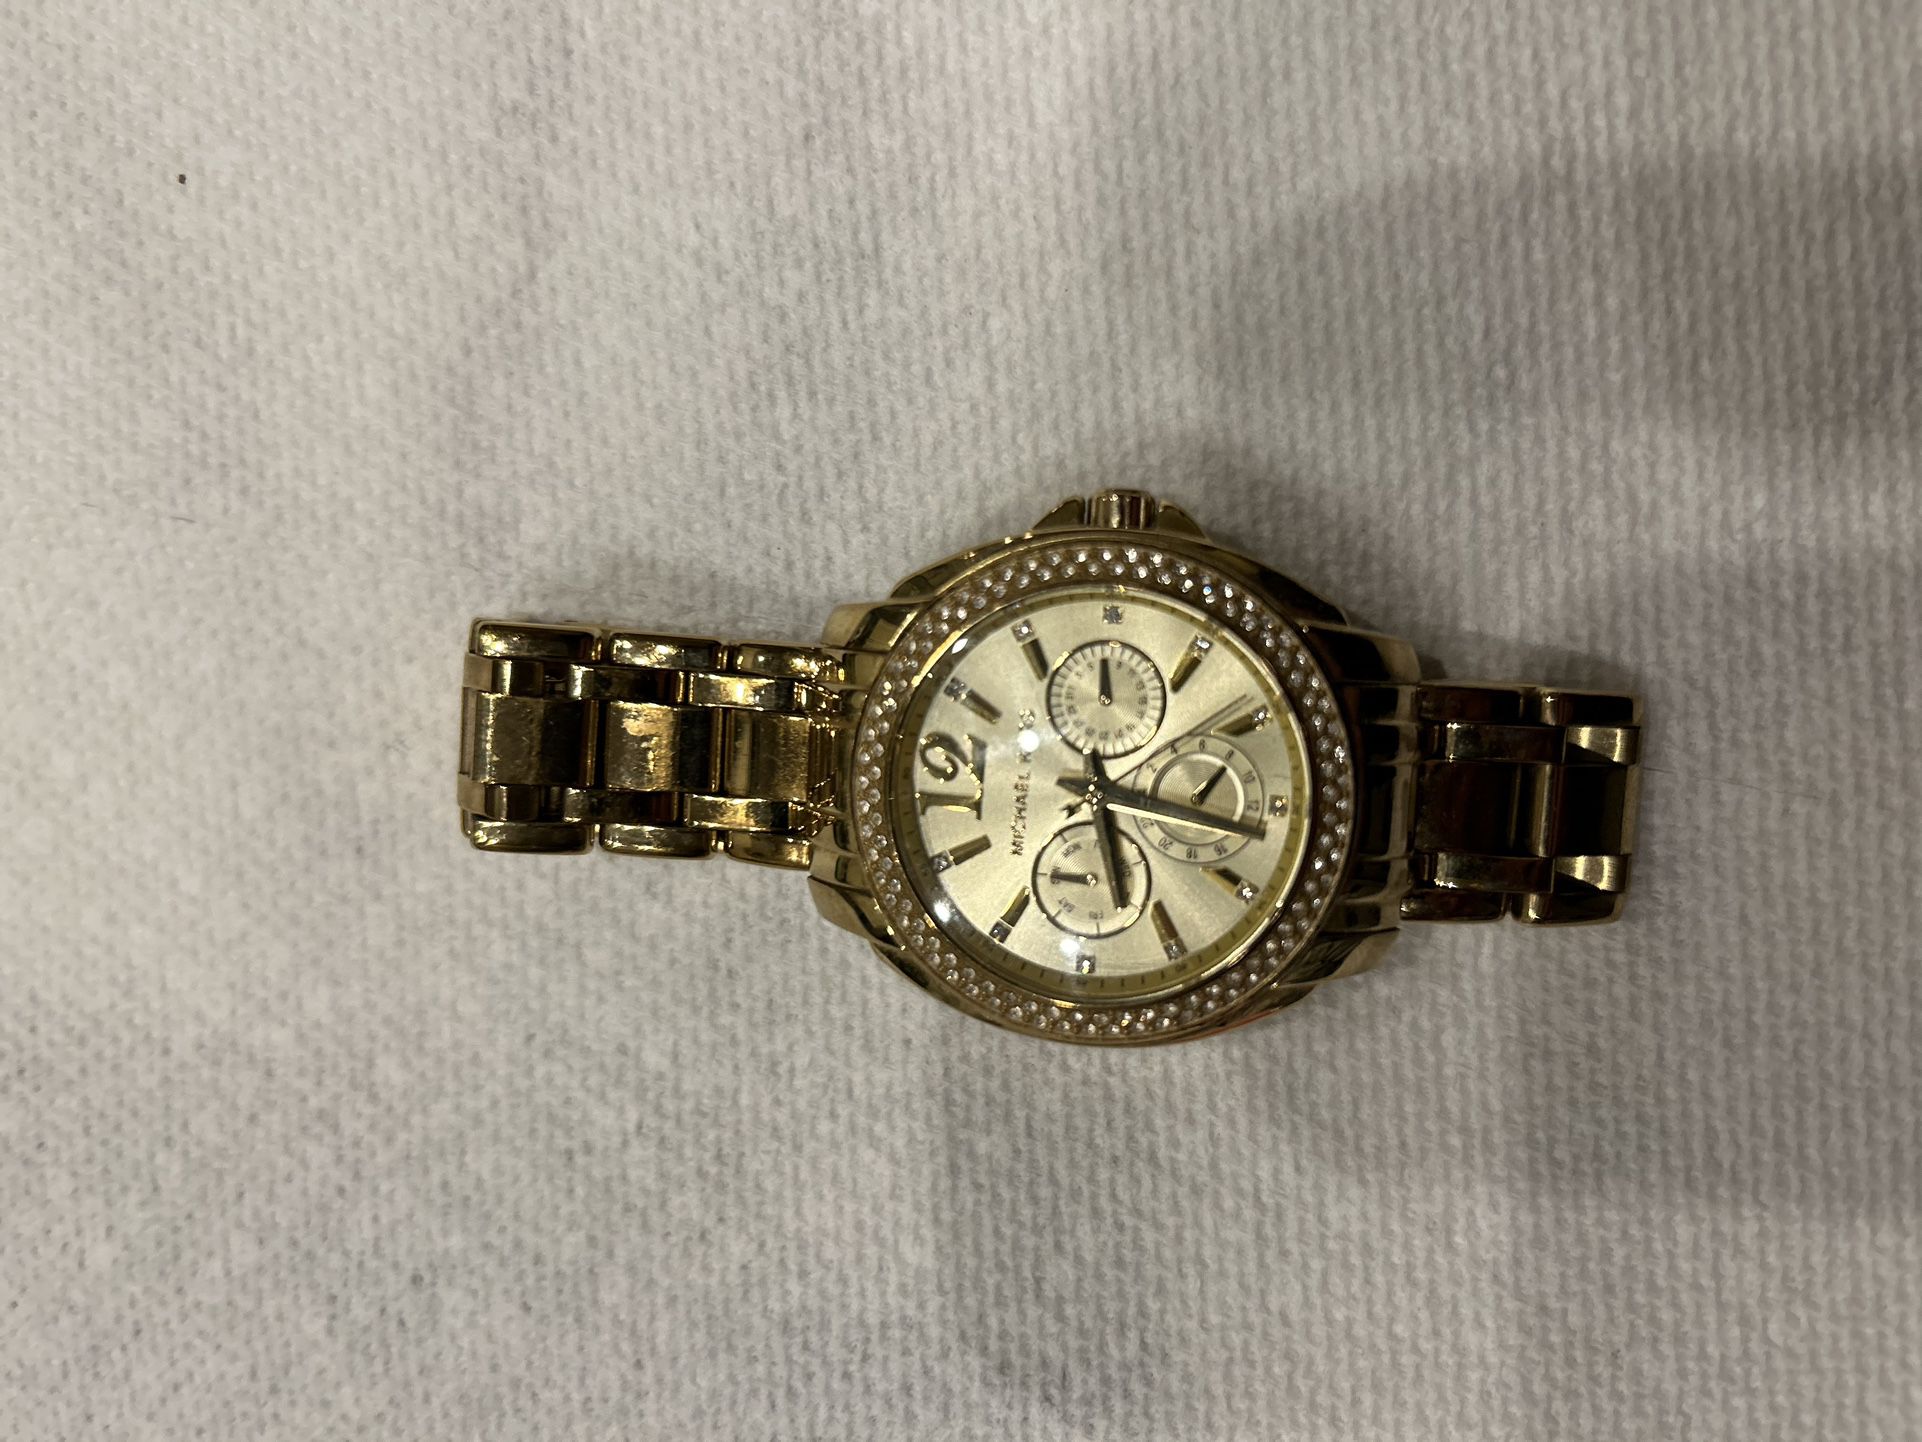 Micheal Kors   MK 5691 Women’s Gold Quartz Watch 